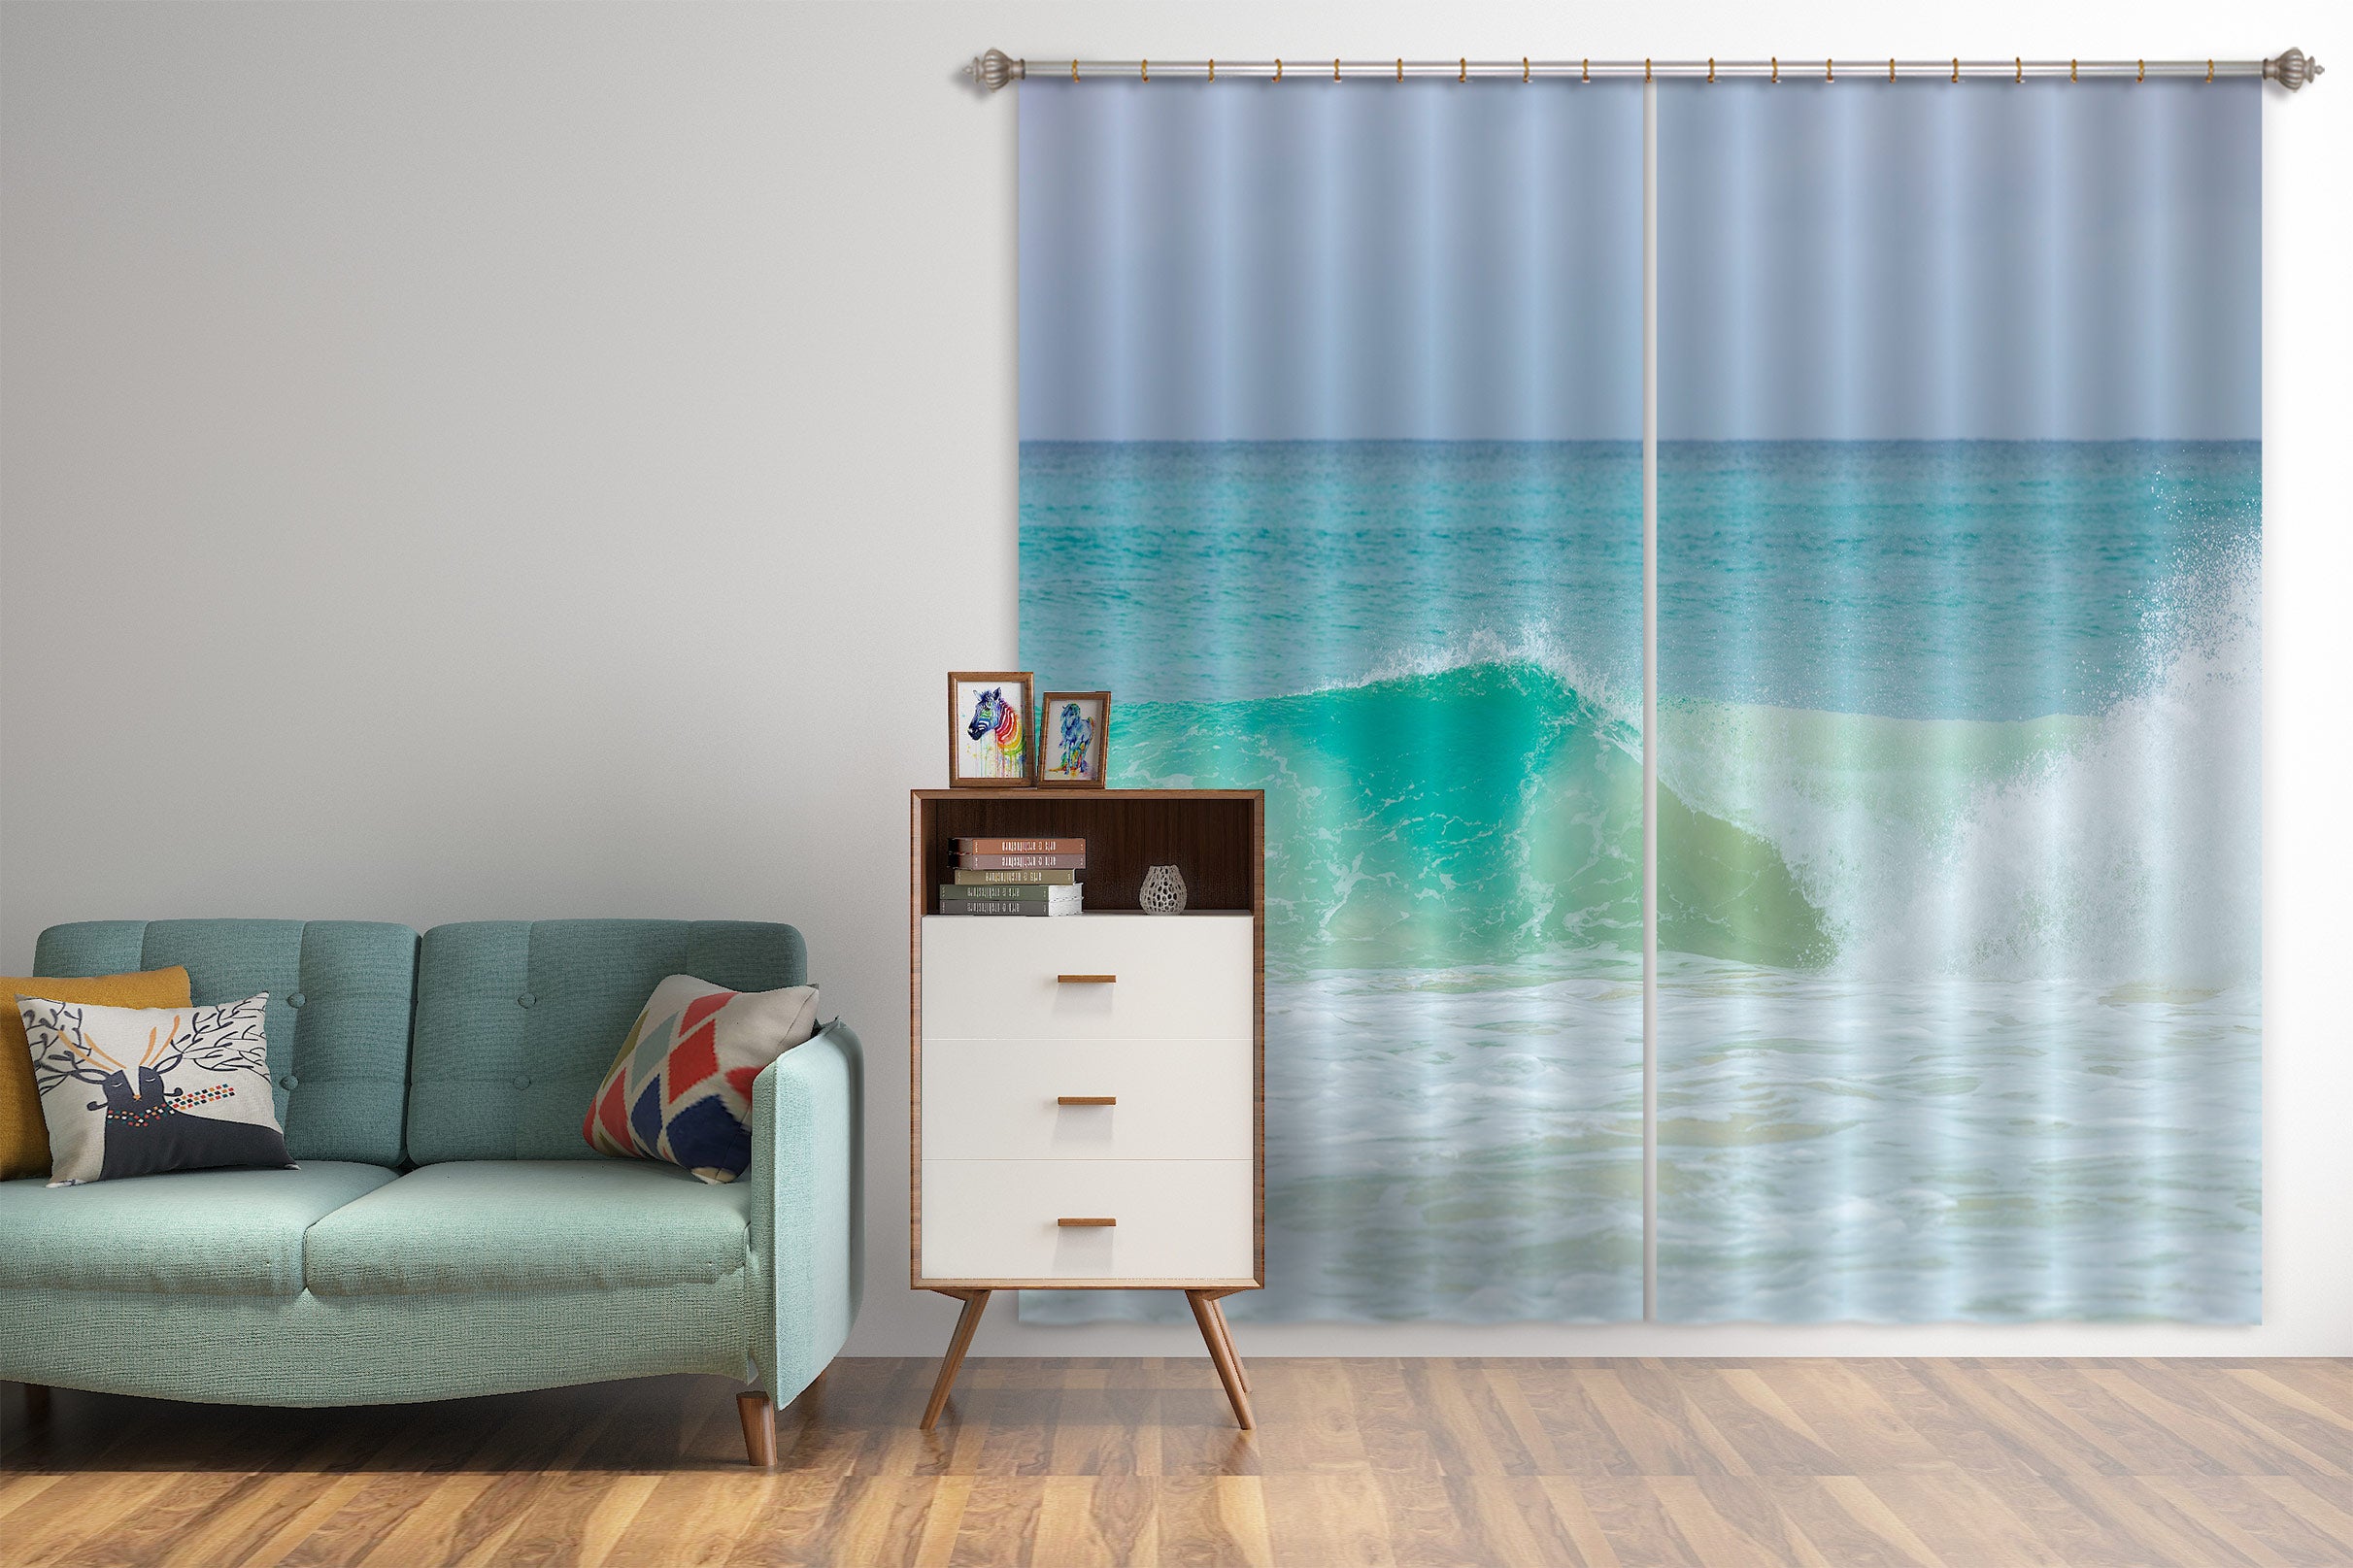 3D Ocean Spray 6532 Assaf Frank Curtain Curtains Drapes